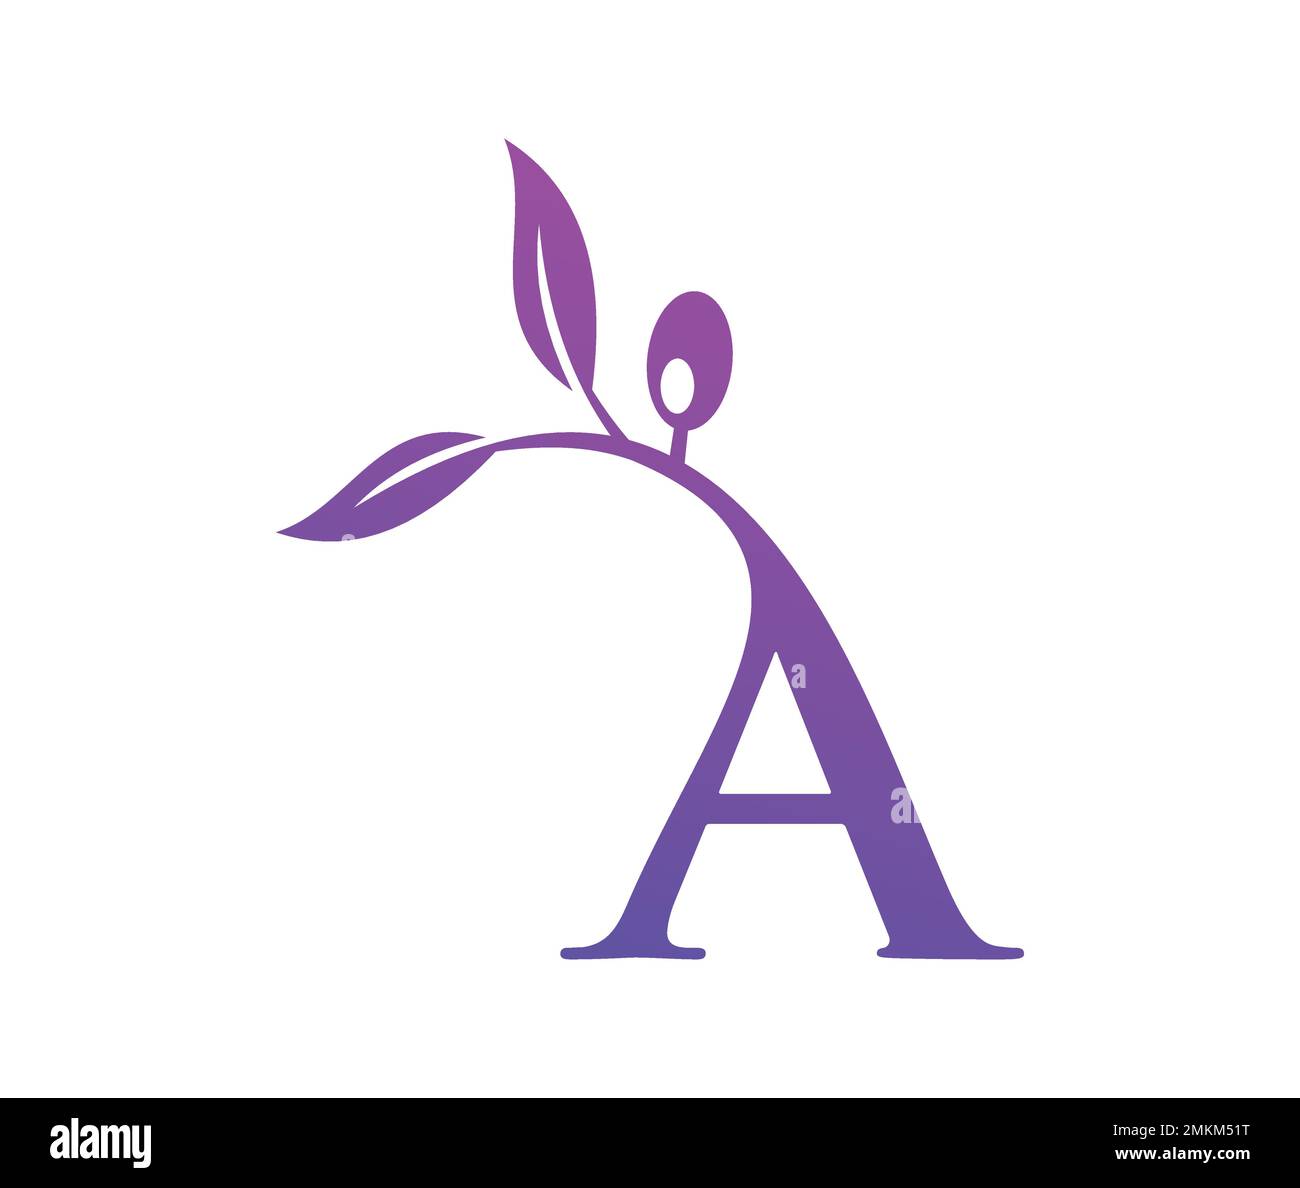 A vector illustration of Grape Vine Monogram Logo Letter A Stock Vector ...